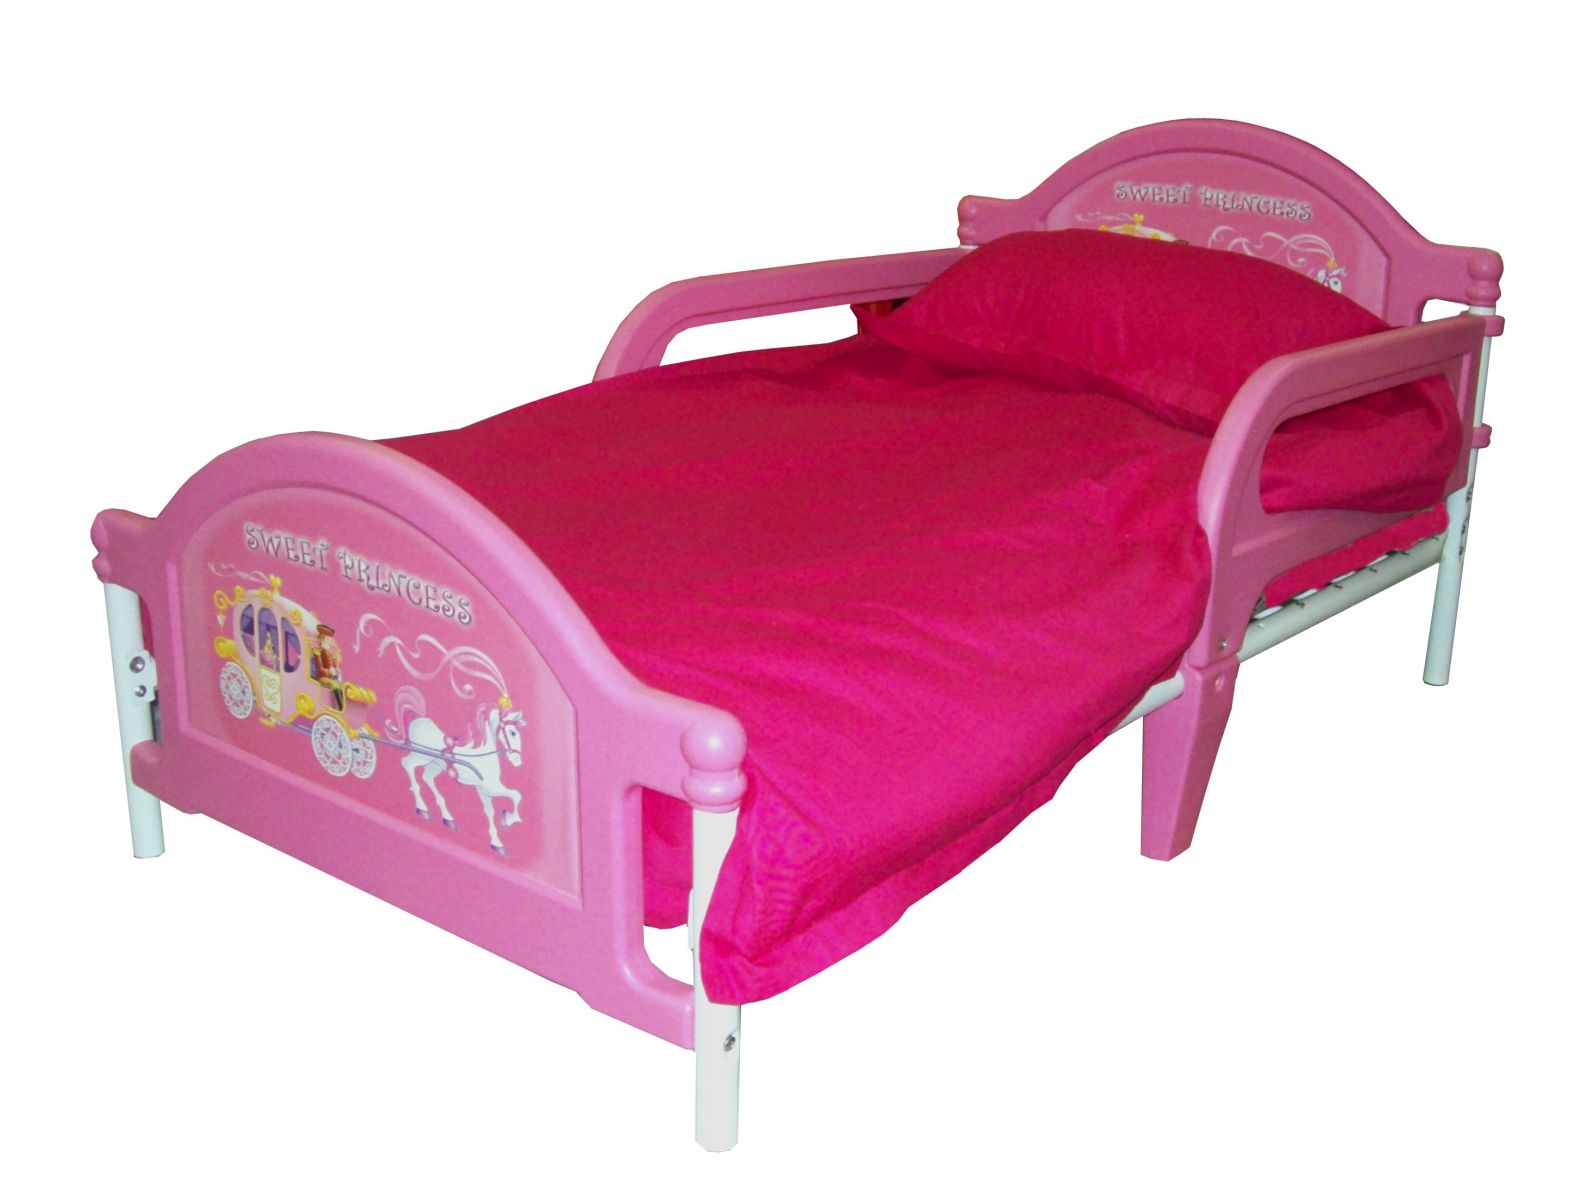 Кровати Toddler Bed пришли в Россию. Кровати для детей от 3-х лет. Кровати от полутора лет, от двух лет,  детские кровати от 2-х лет